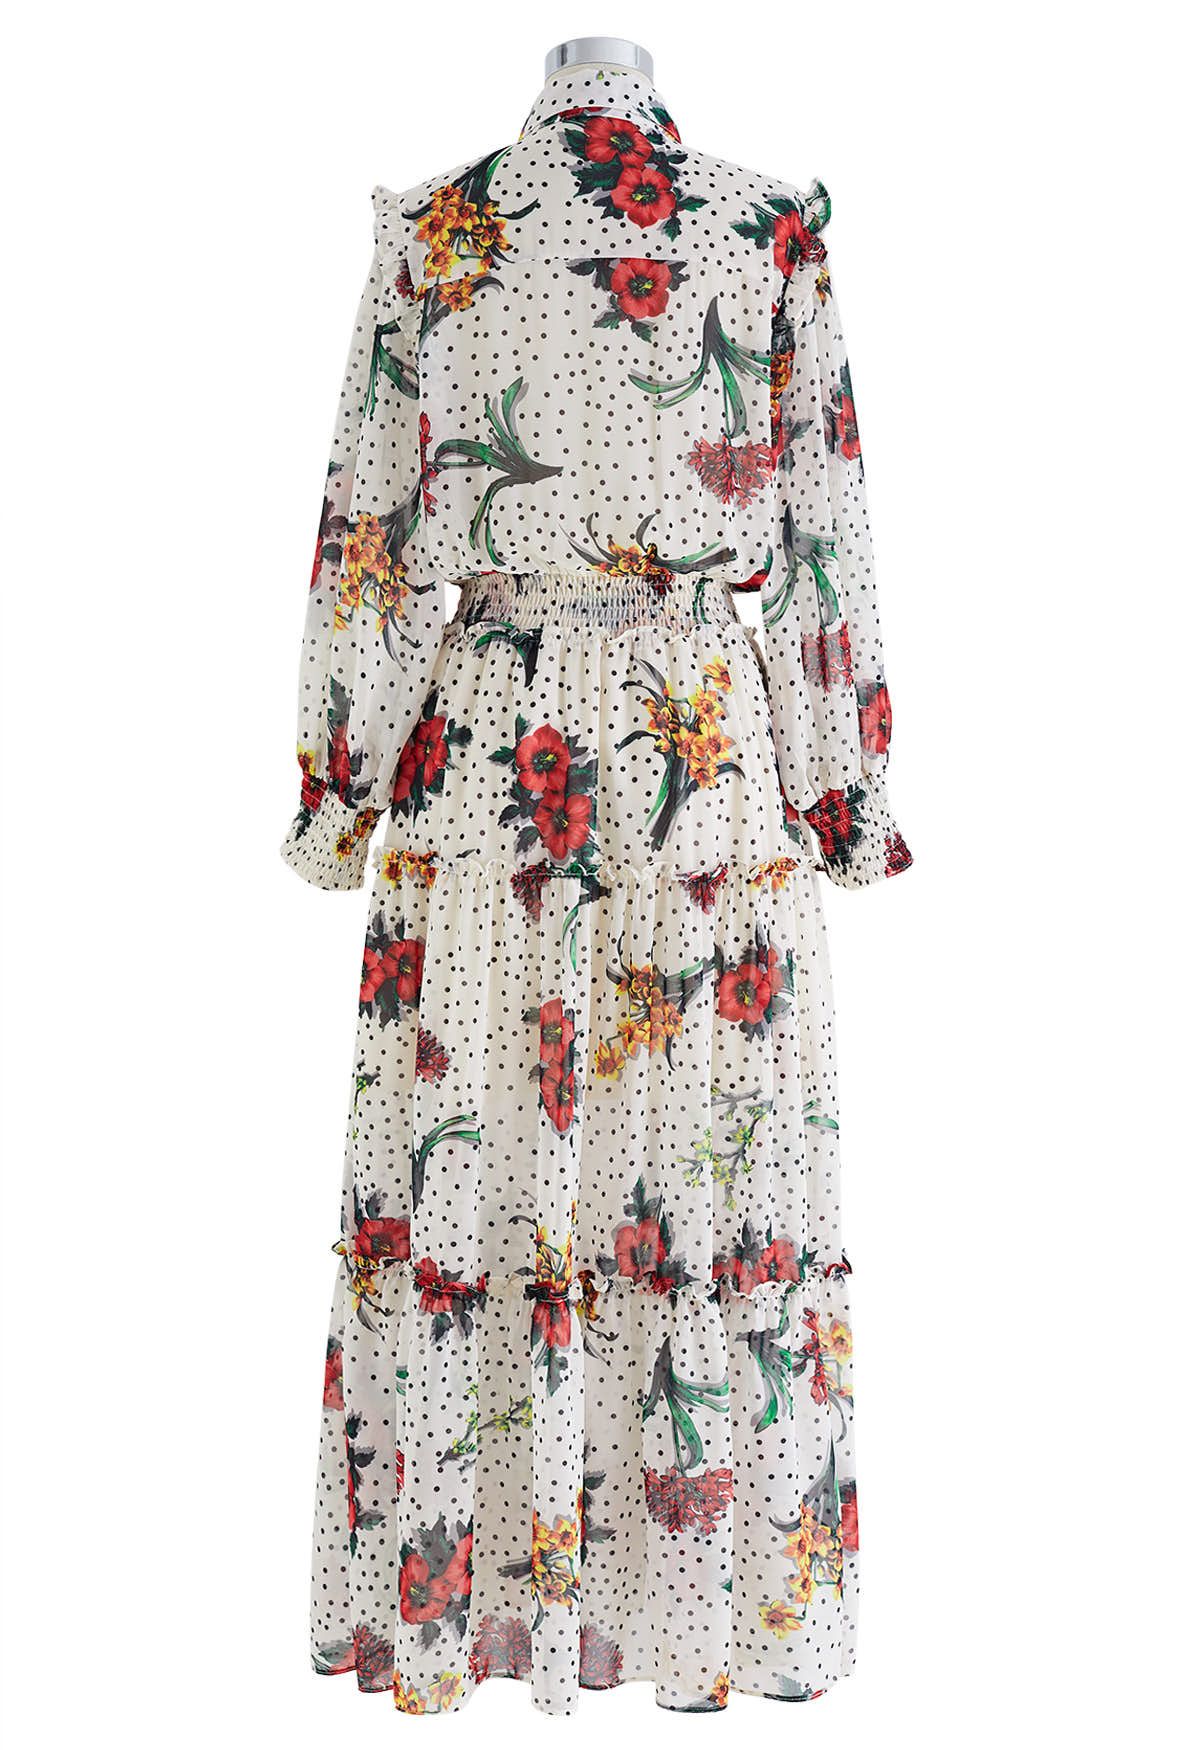 Polka Dot Floral Printed Chiffon Maxi Dress